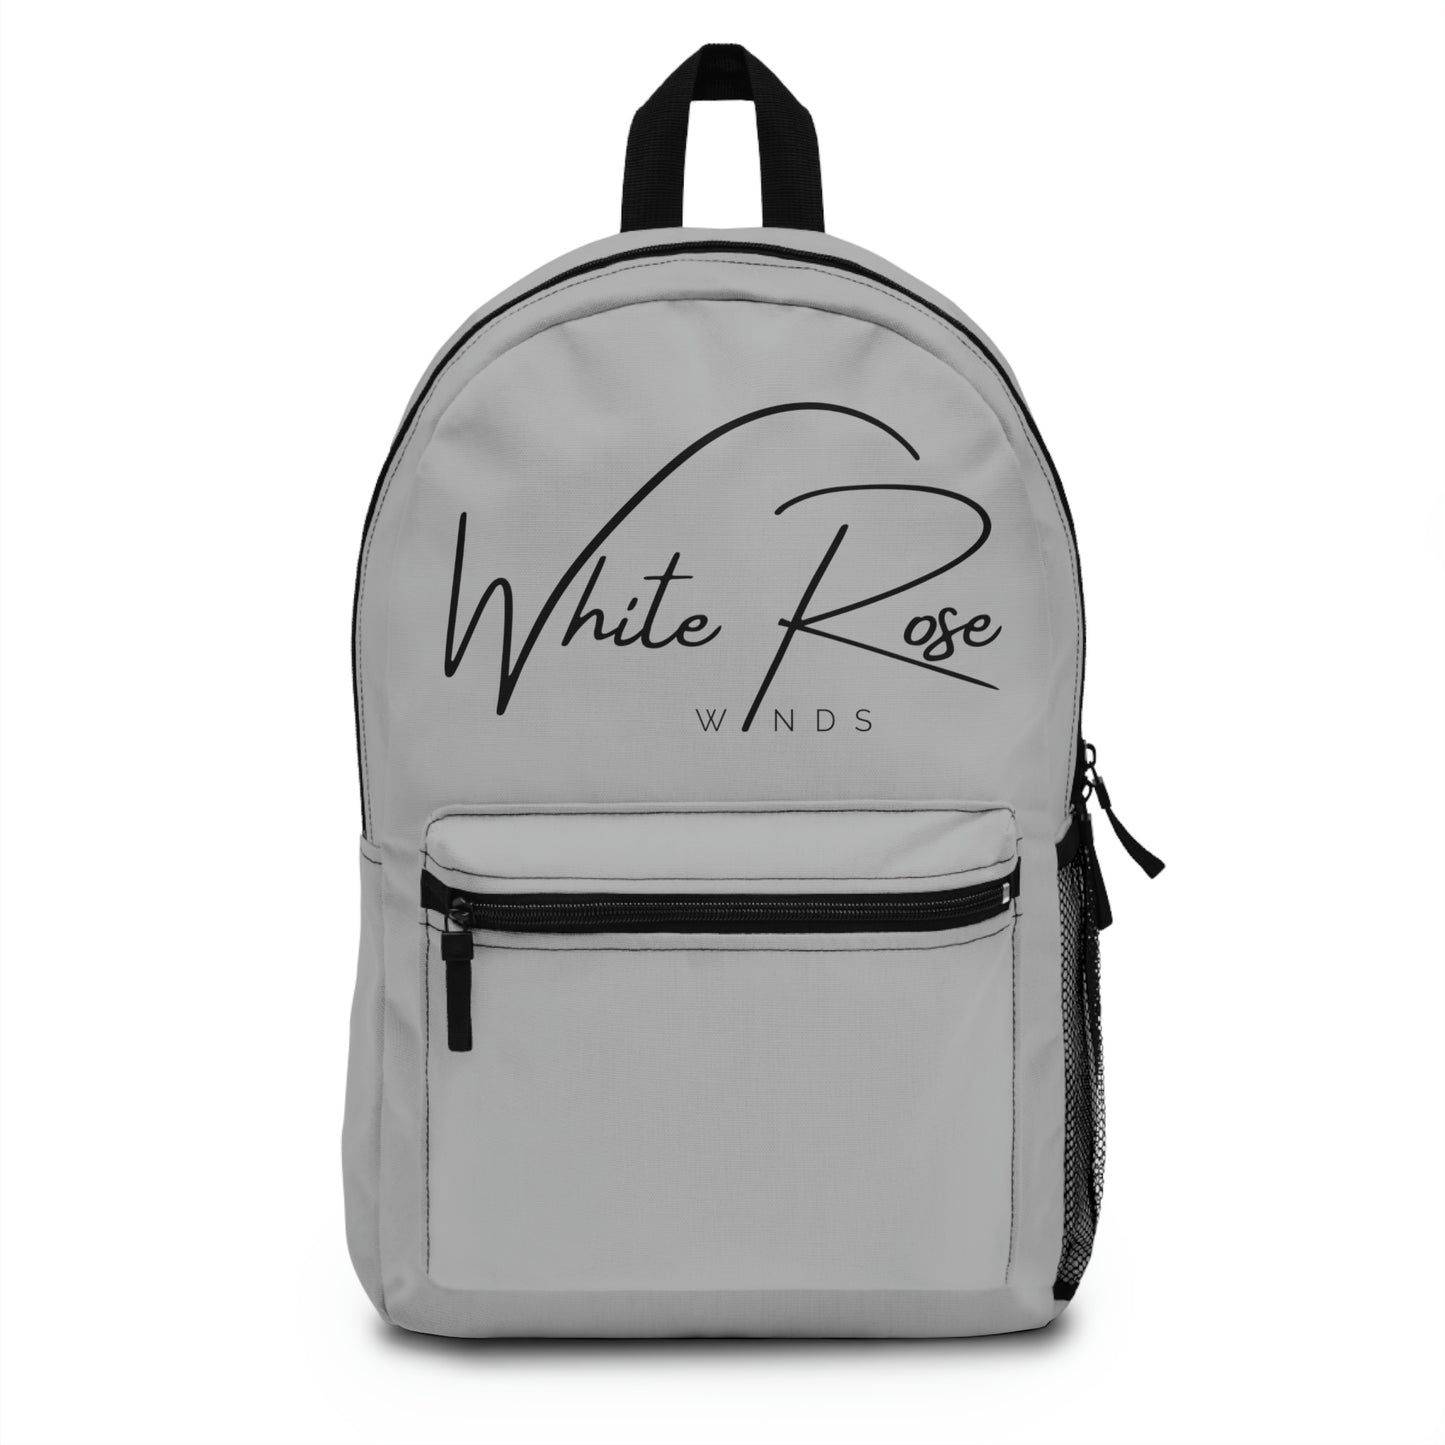 White Rose Backpack